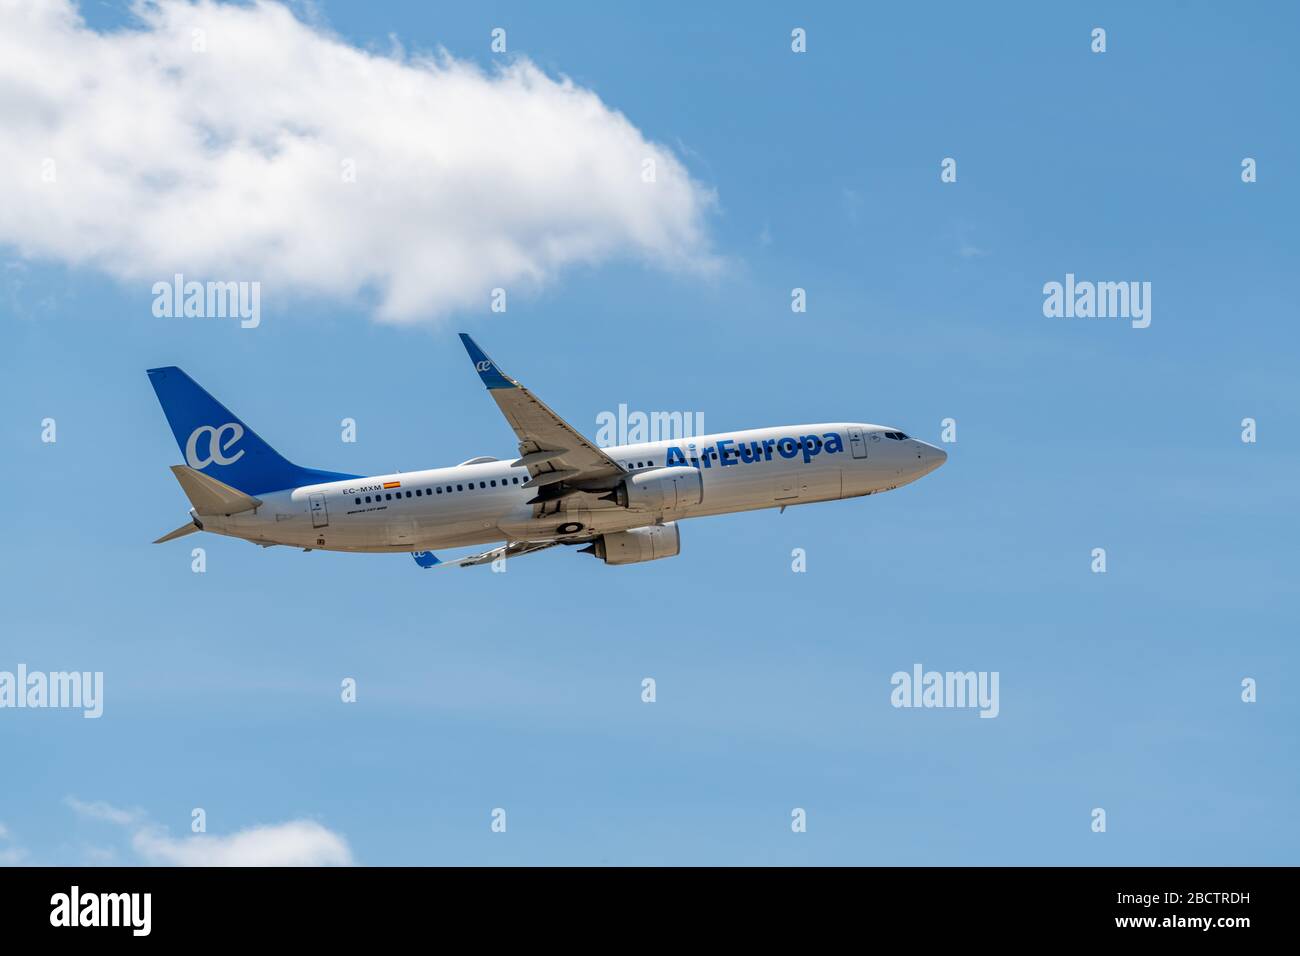 MADRID, SPAGNA - 14 APRILE 2019: Air Europa compagnie aeree Boeing 737 NG / Max passeggeri aereo decollo da Madrid-Barajas Aeroporto Internazionale Adolfo su Foto Stock